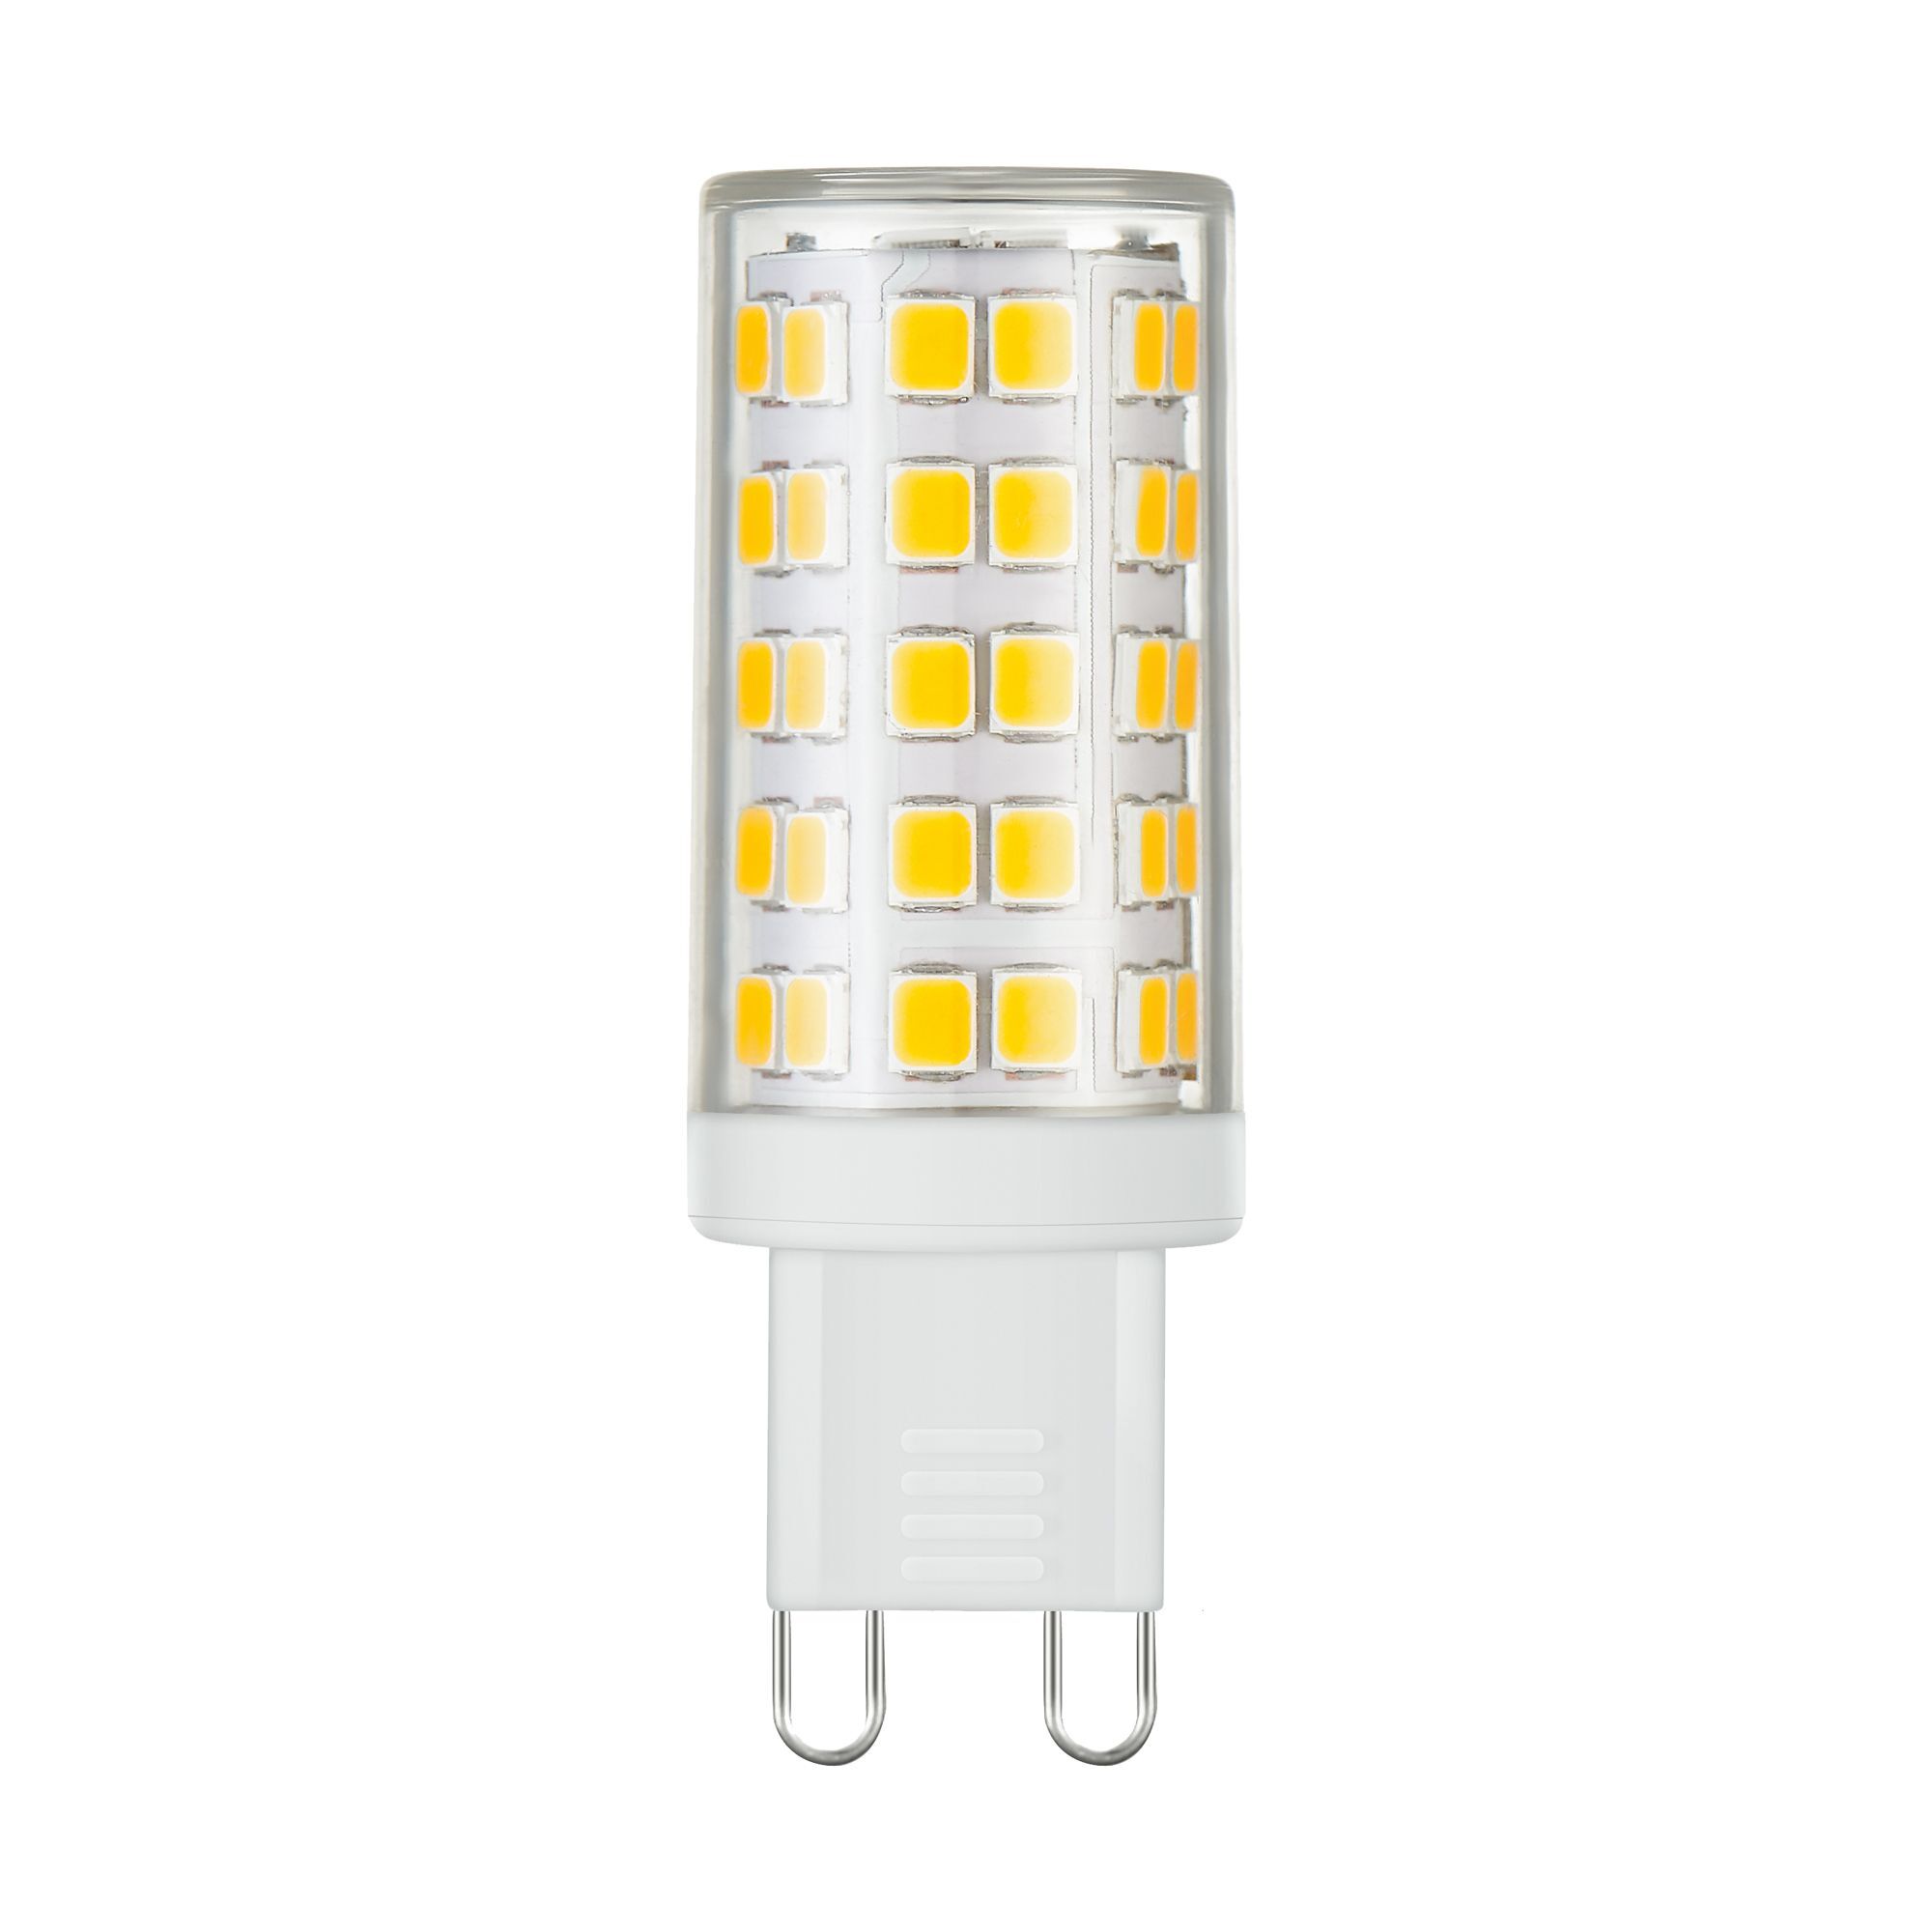 Лампа светодиодная Elektrostandard G9 JCD 9 Вт 4200К естественный свет 220 В капсула (BLG904) лампа светодиодная elektrostandard g4 jcd 5 вт 4200к естественный свет 220 в капсула blg420